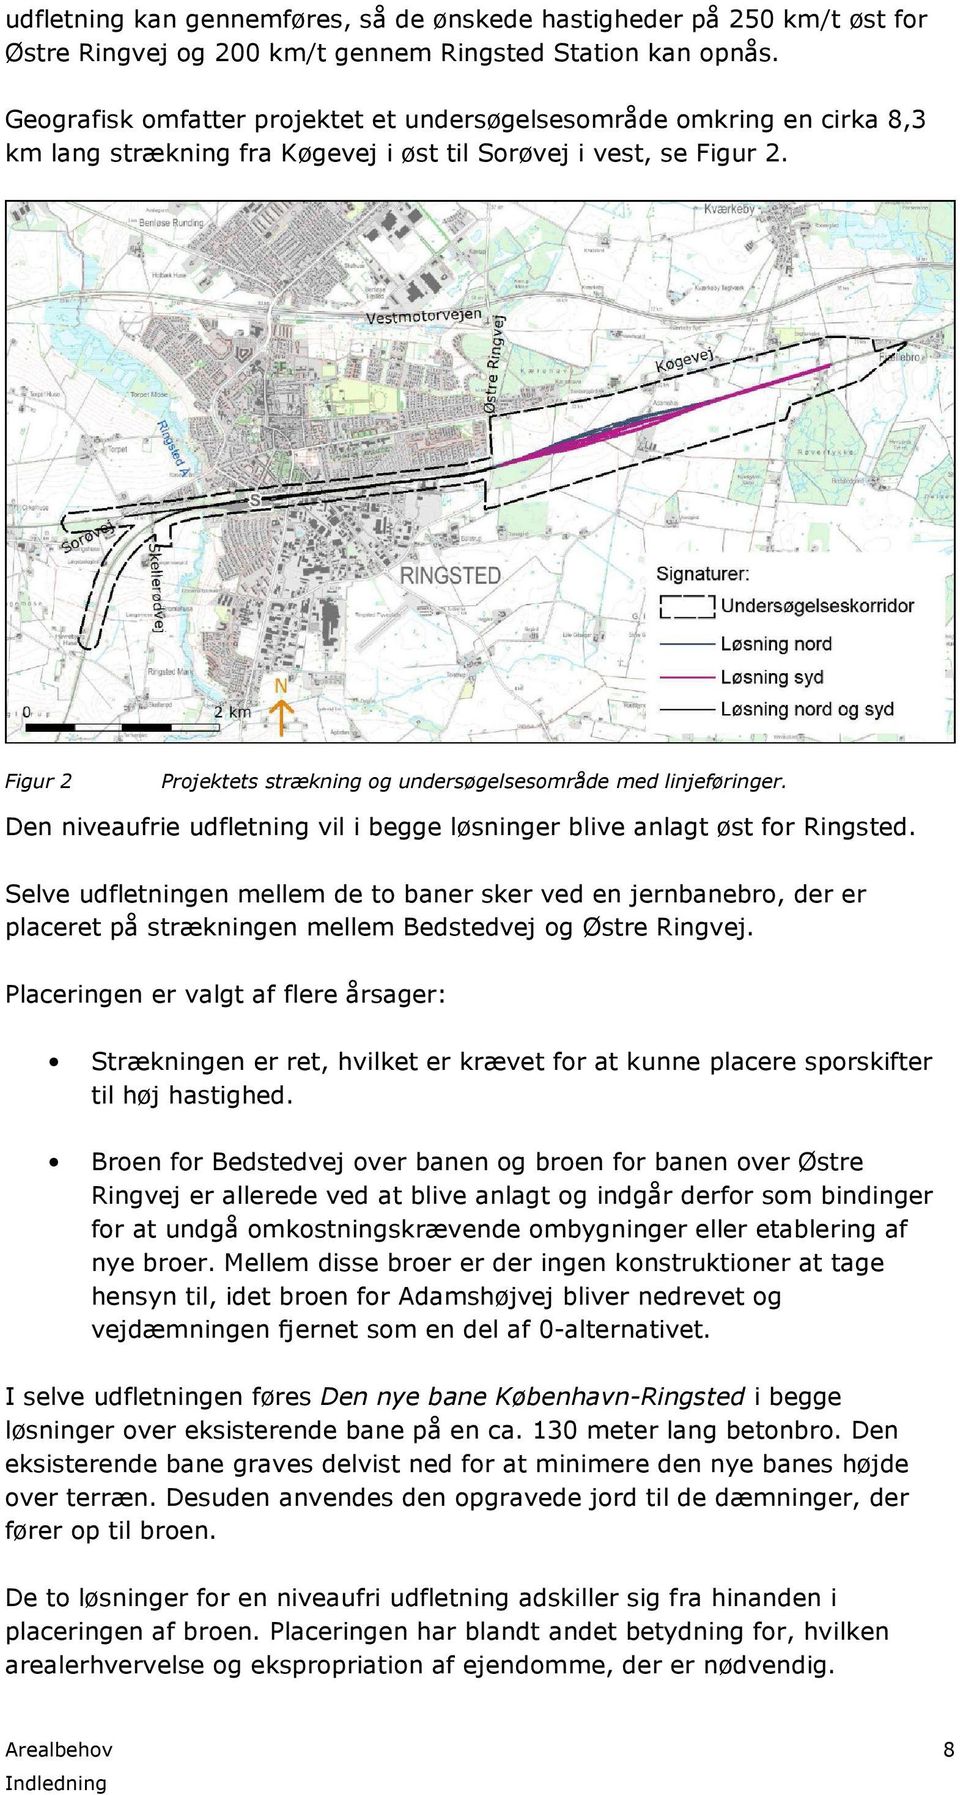 Figur 2 Projektets strækning og undersøgelsesområde med linjeføringer. Den niveaufrie udfletning vil i begge løsninger blive anlagt øst for Ringsted.